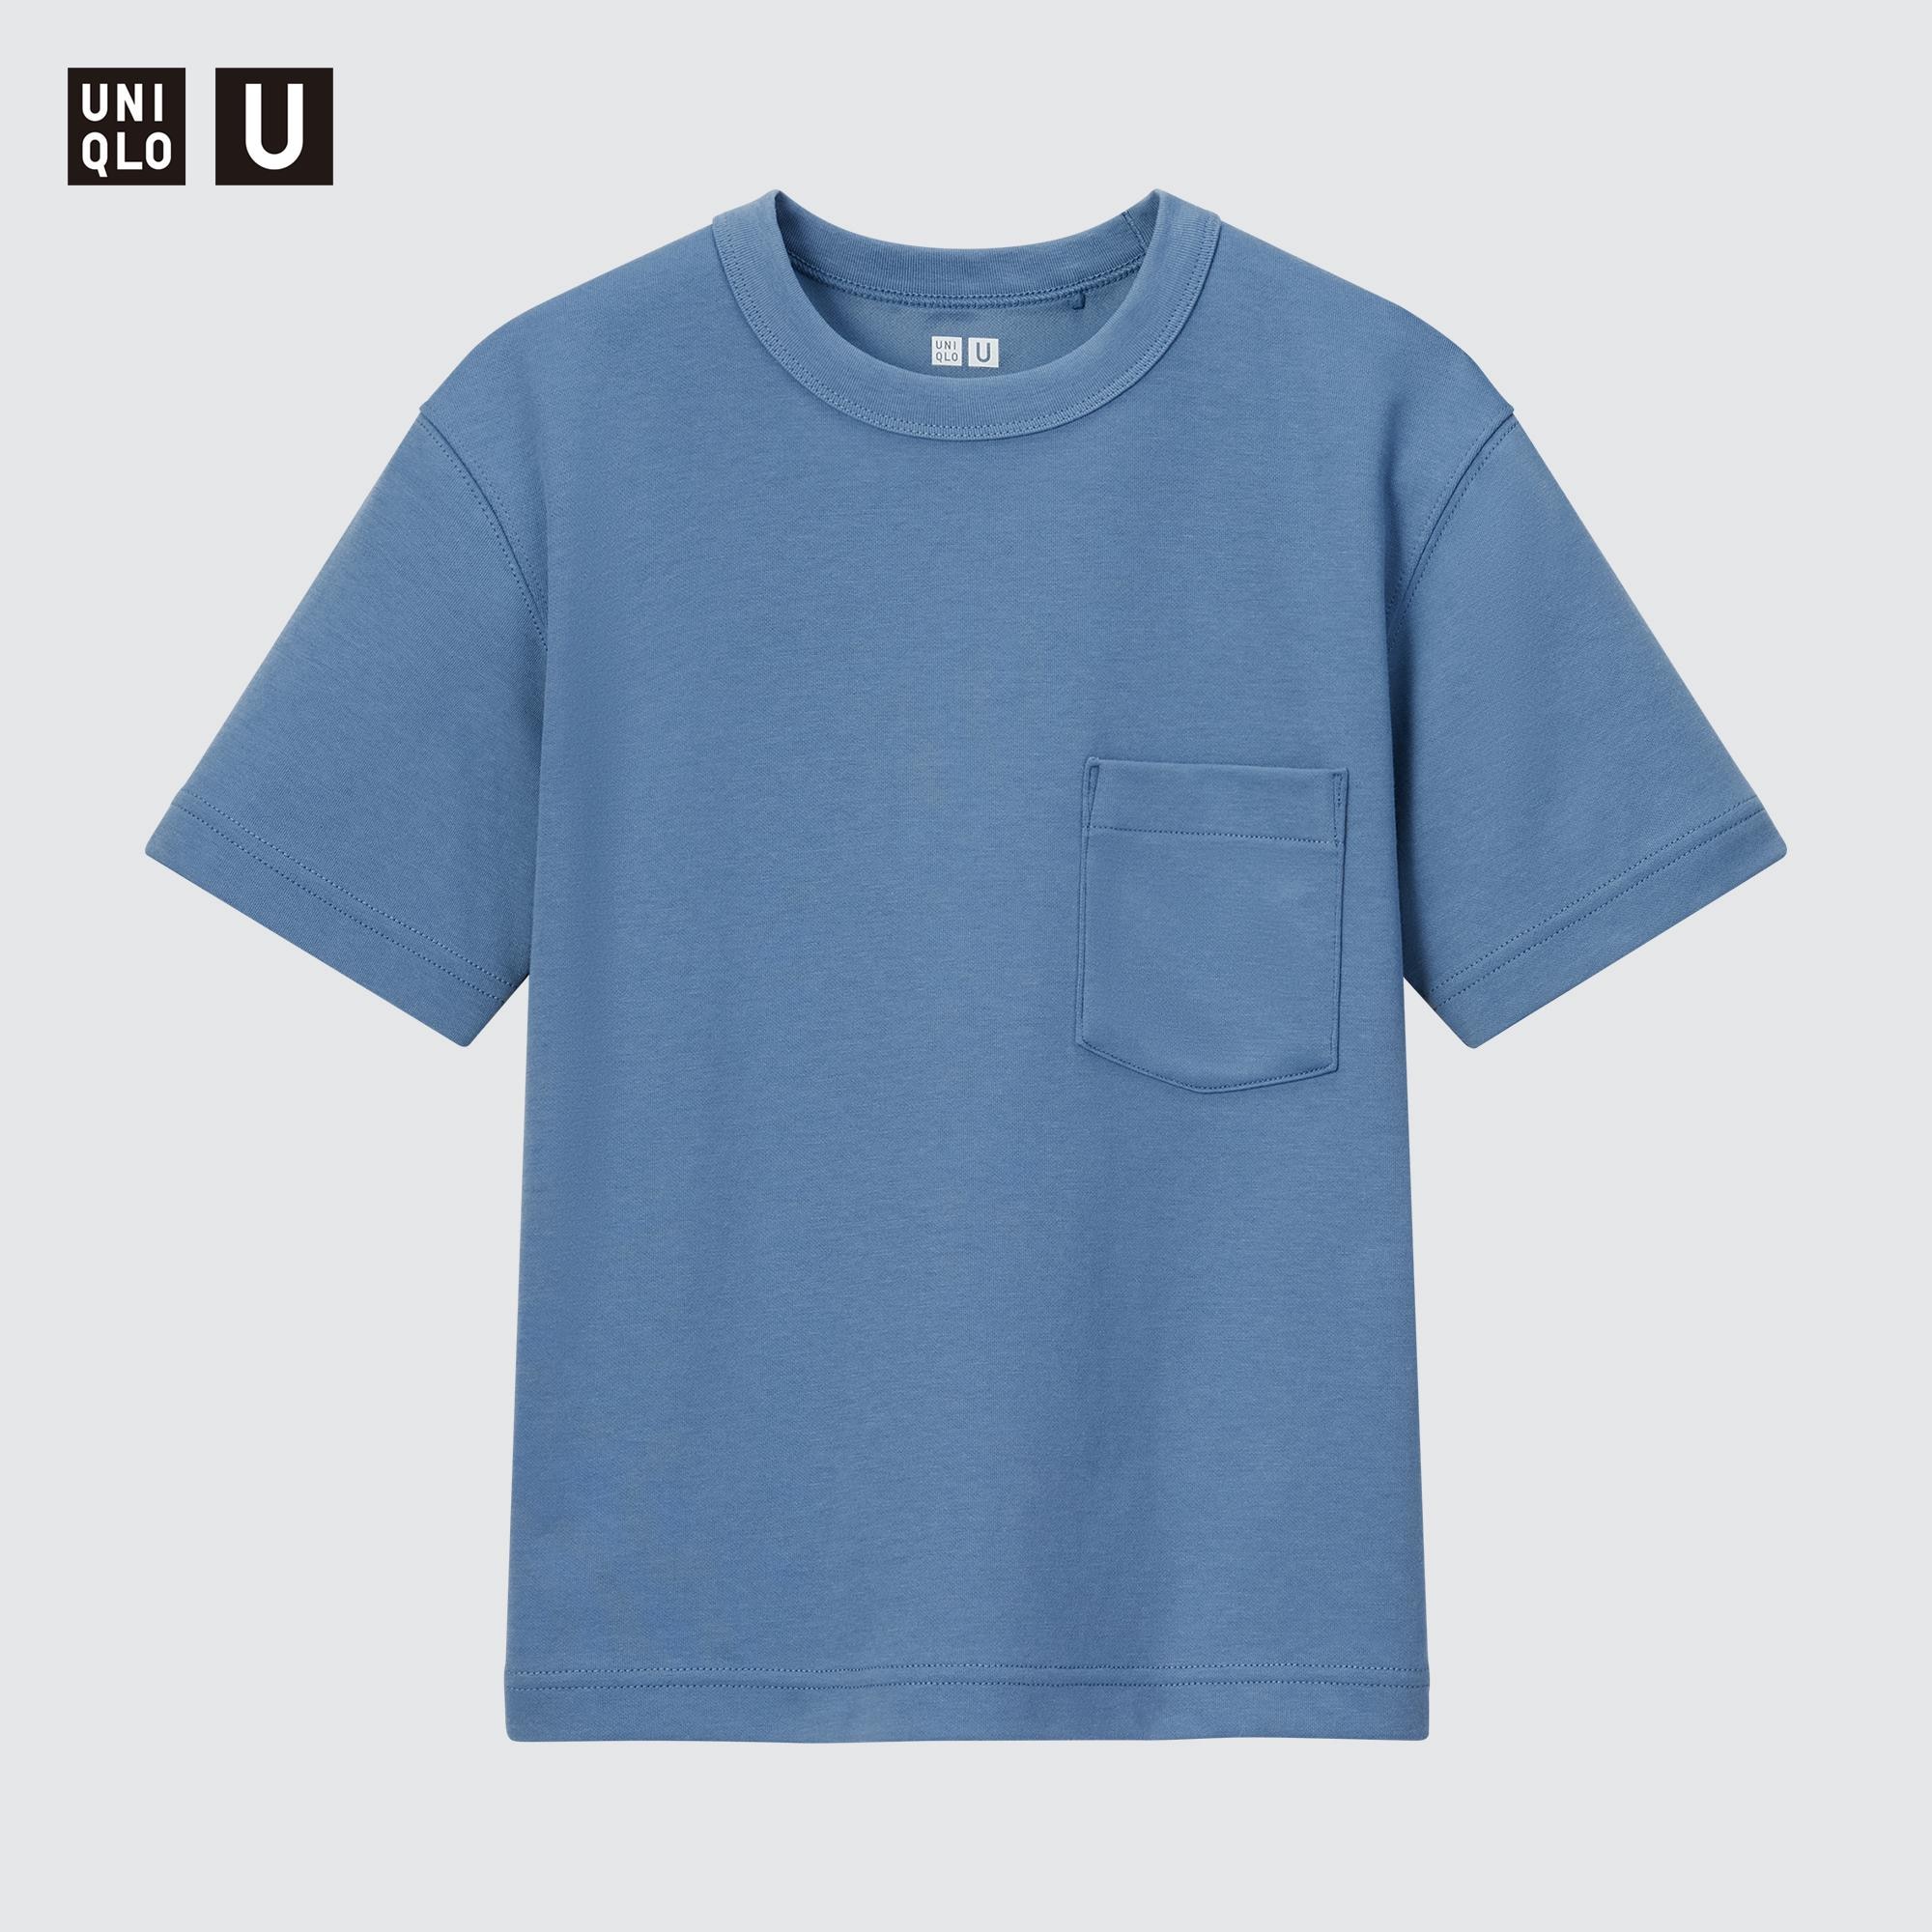 特別セール商品 HM オシュコシュ ユニクロ 半袖Tシャツ パンツ 80サイズ 取り寄せ オンライン:380円  ブランド:エイチアンドエム トップス、